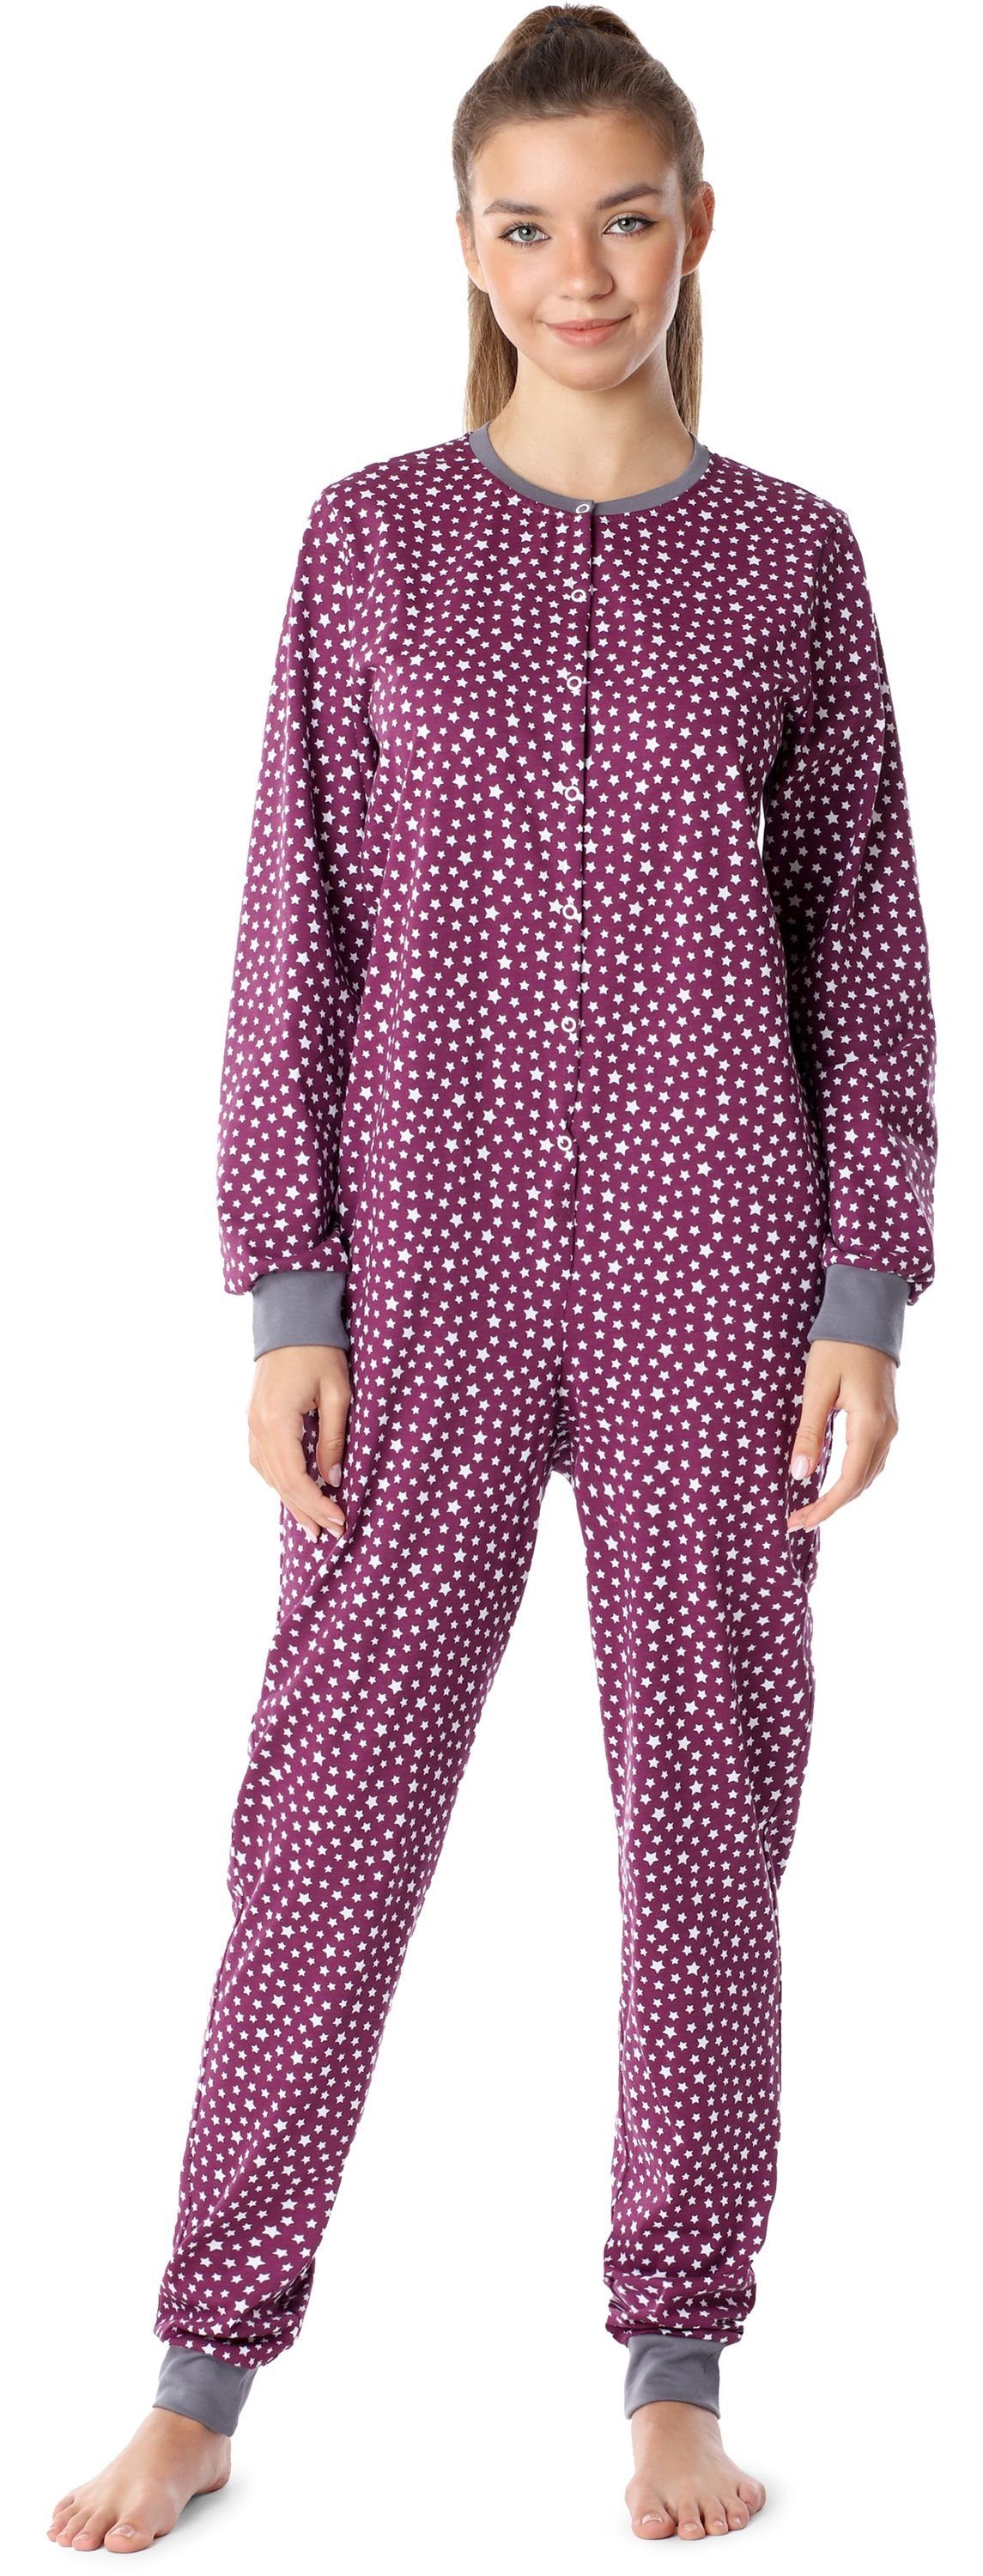 Merry Style Schlafanzug Mädchen Jugend Schlafanzug Schlafoverall MS10-335 Rot/Sterne | Pyjamas